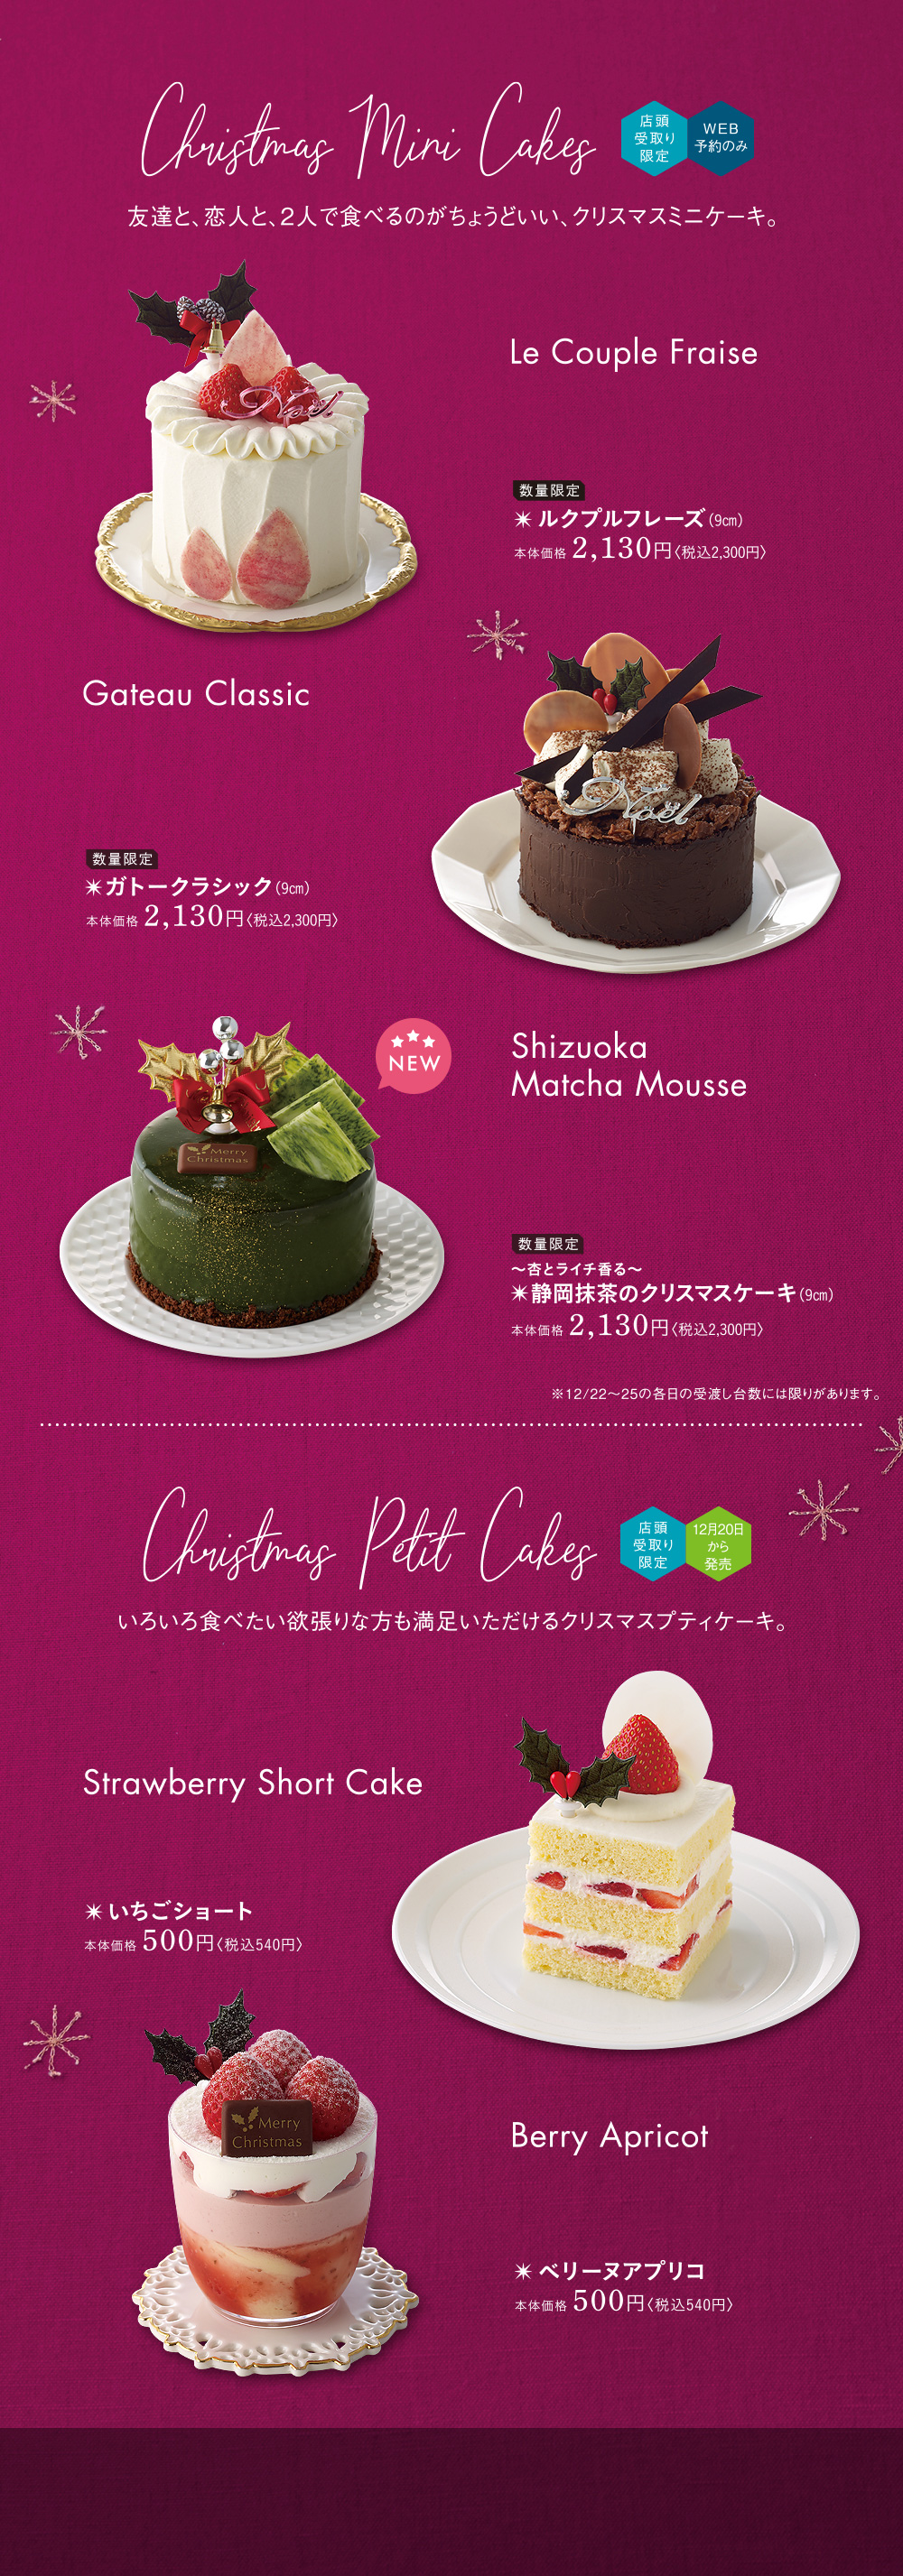 春華 堂 クリスマス ケーキ